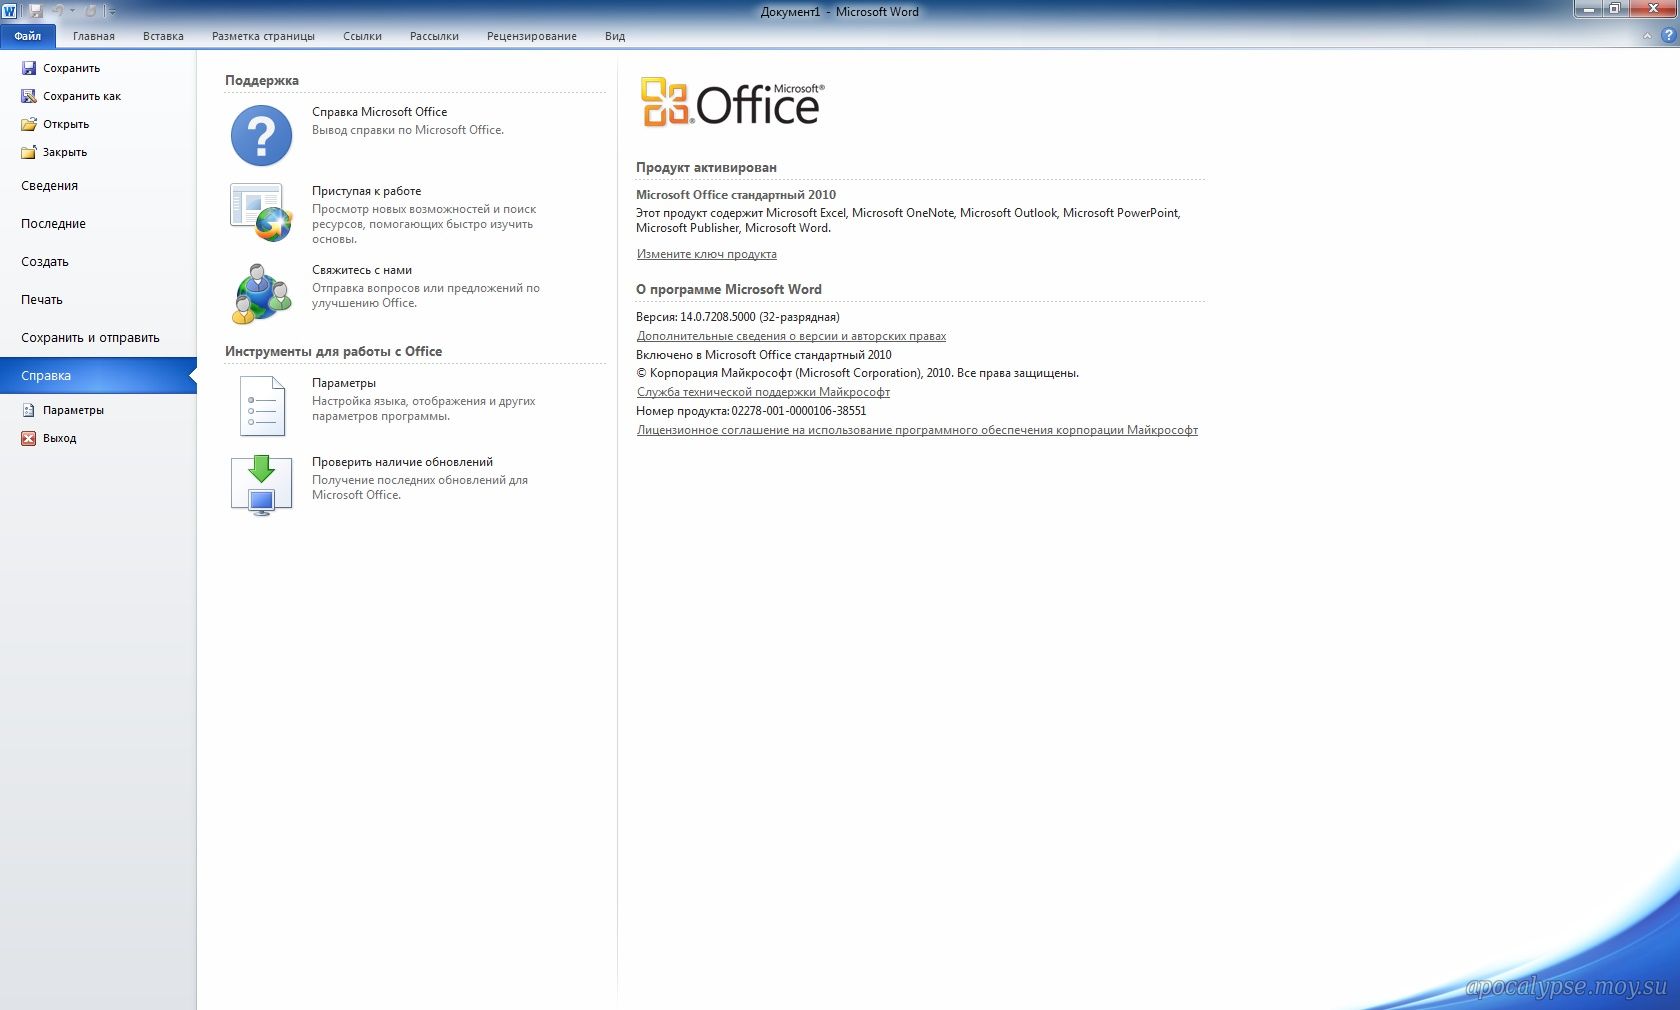 Офис 2010 год. Microsoft Office 2010. Майкрософт офис 2010. Майкрософт 2010. Программы Майкрософт офис 2010.